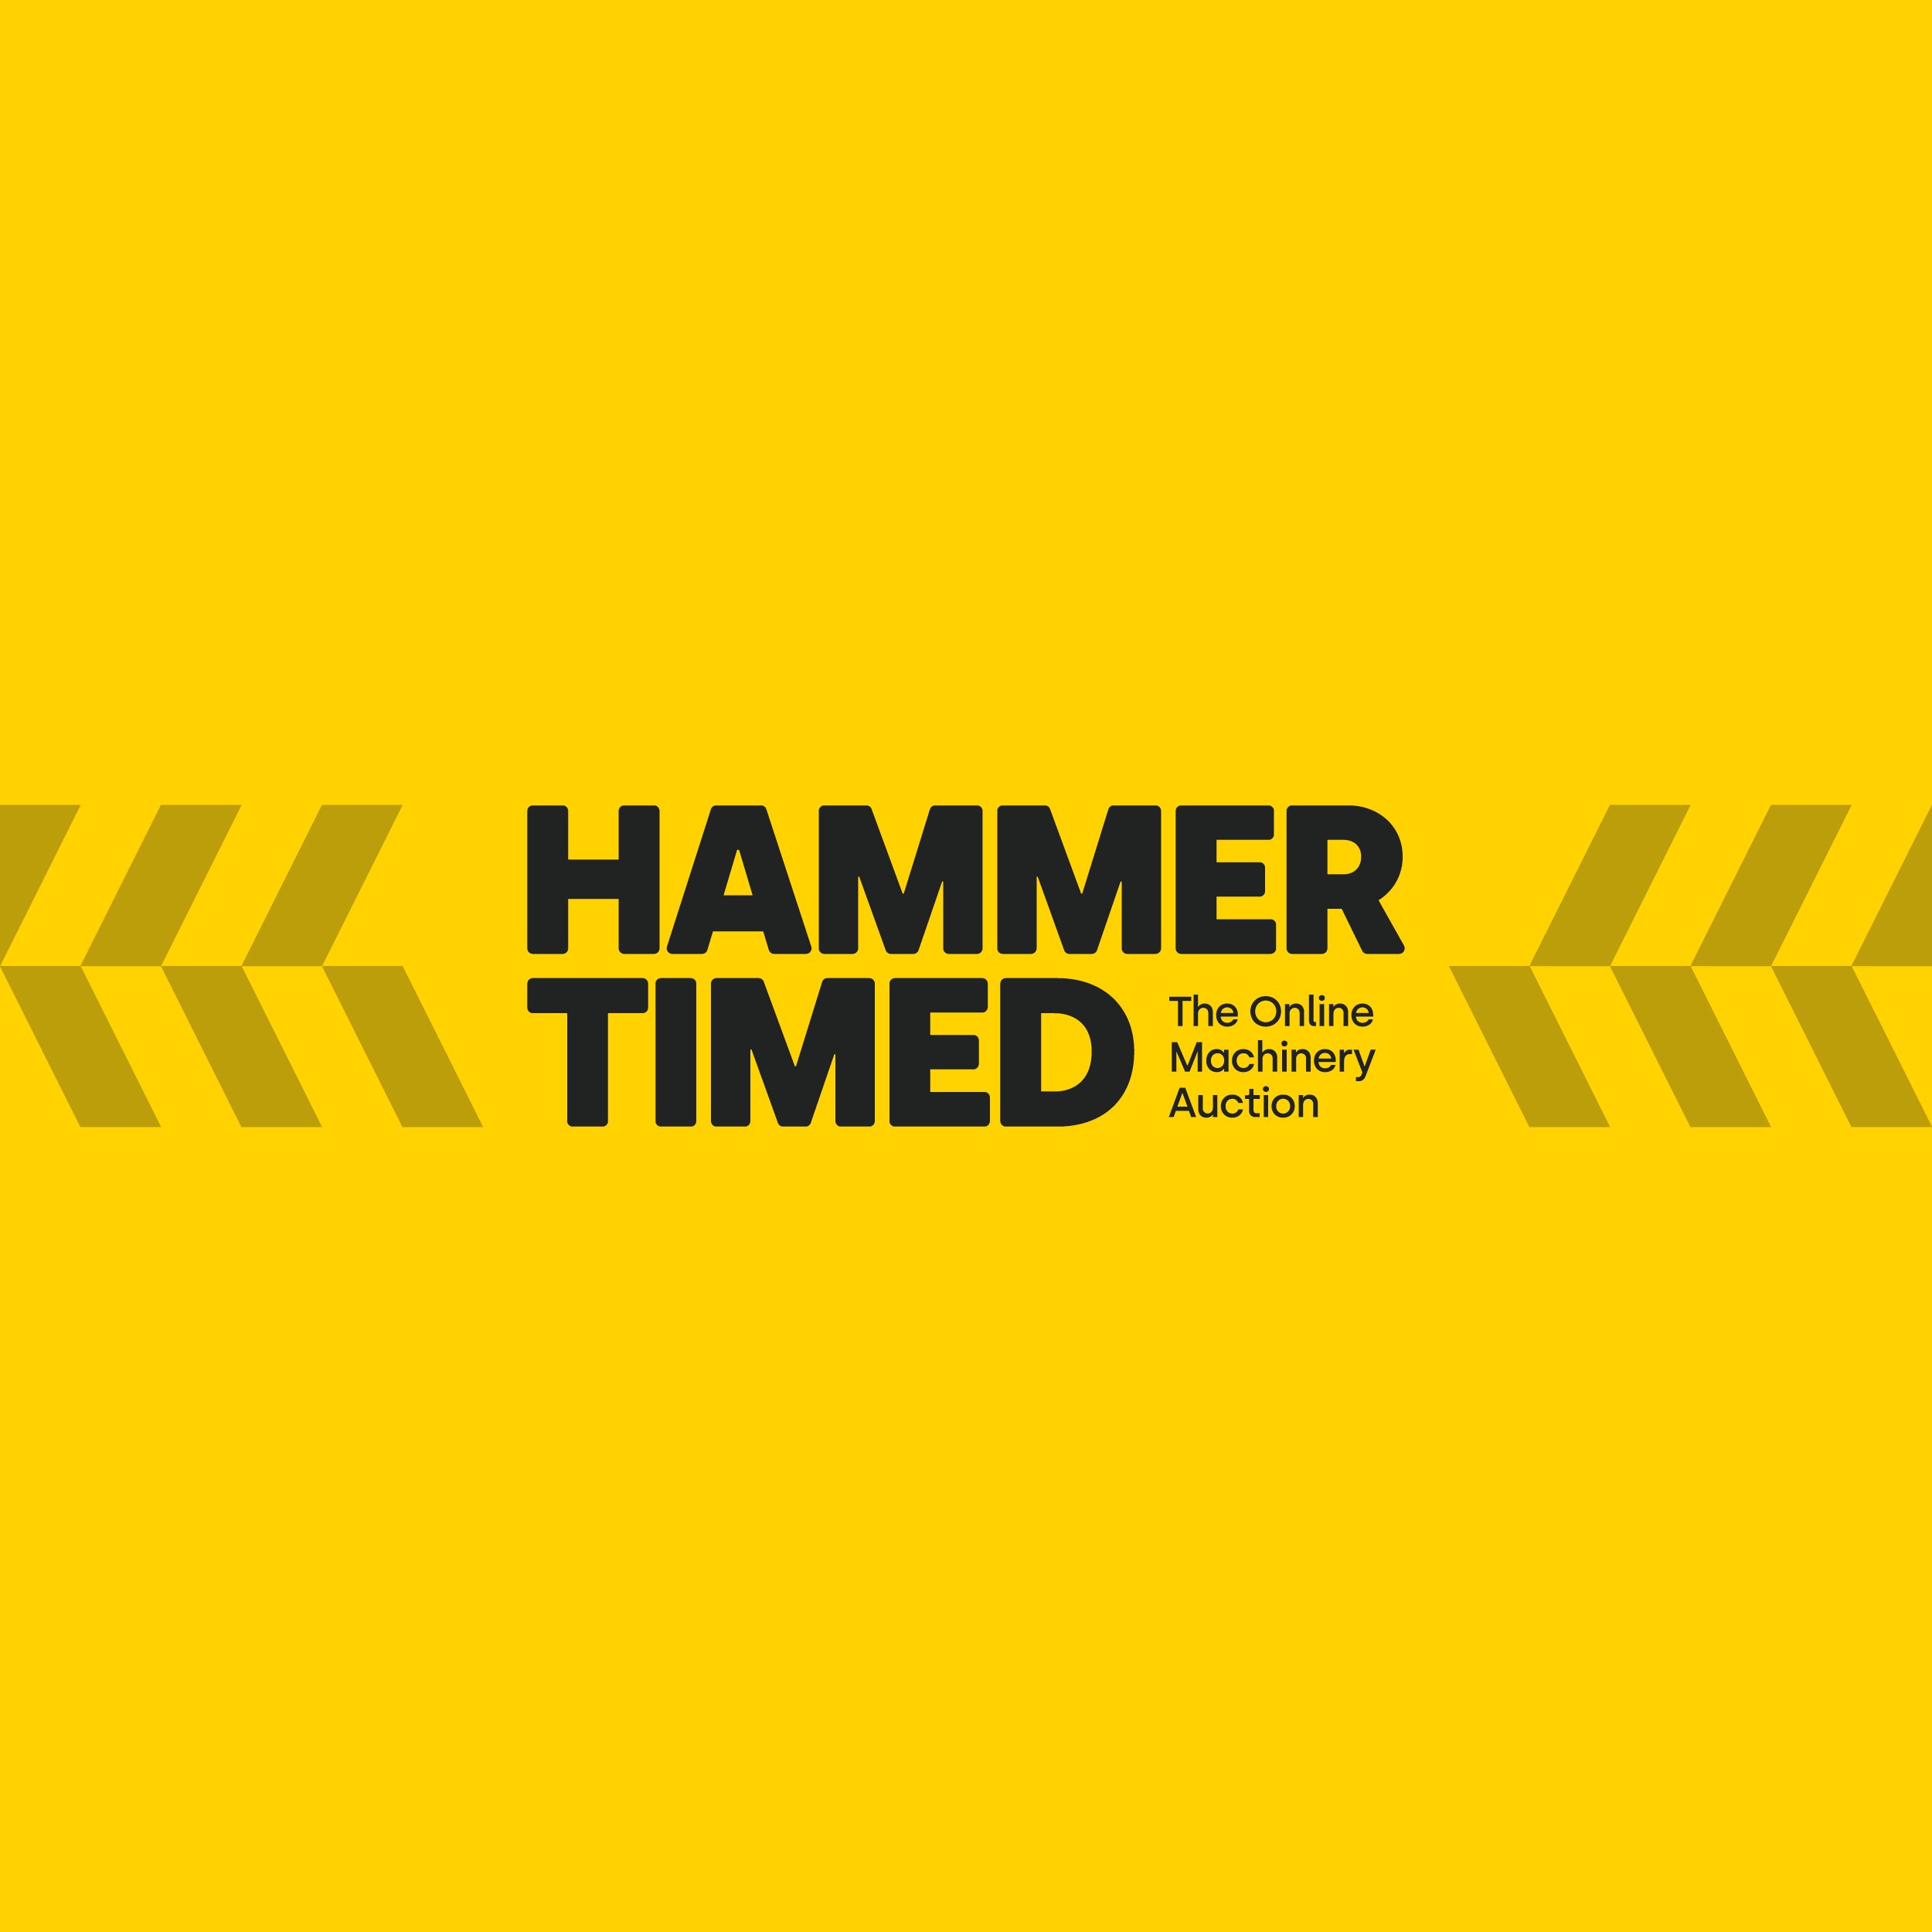 HammerTimed-1.jpg